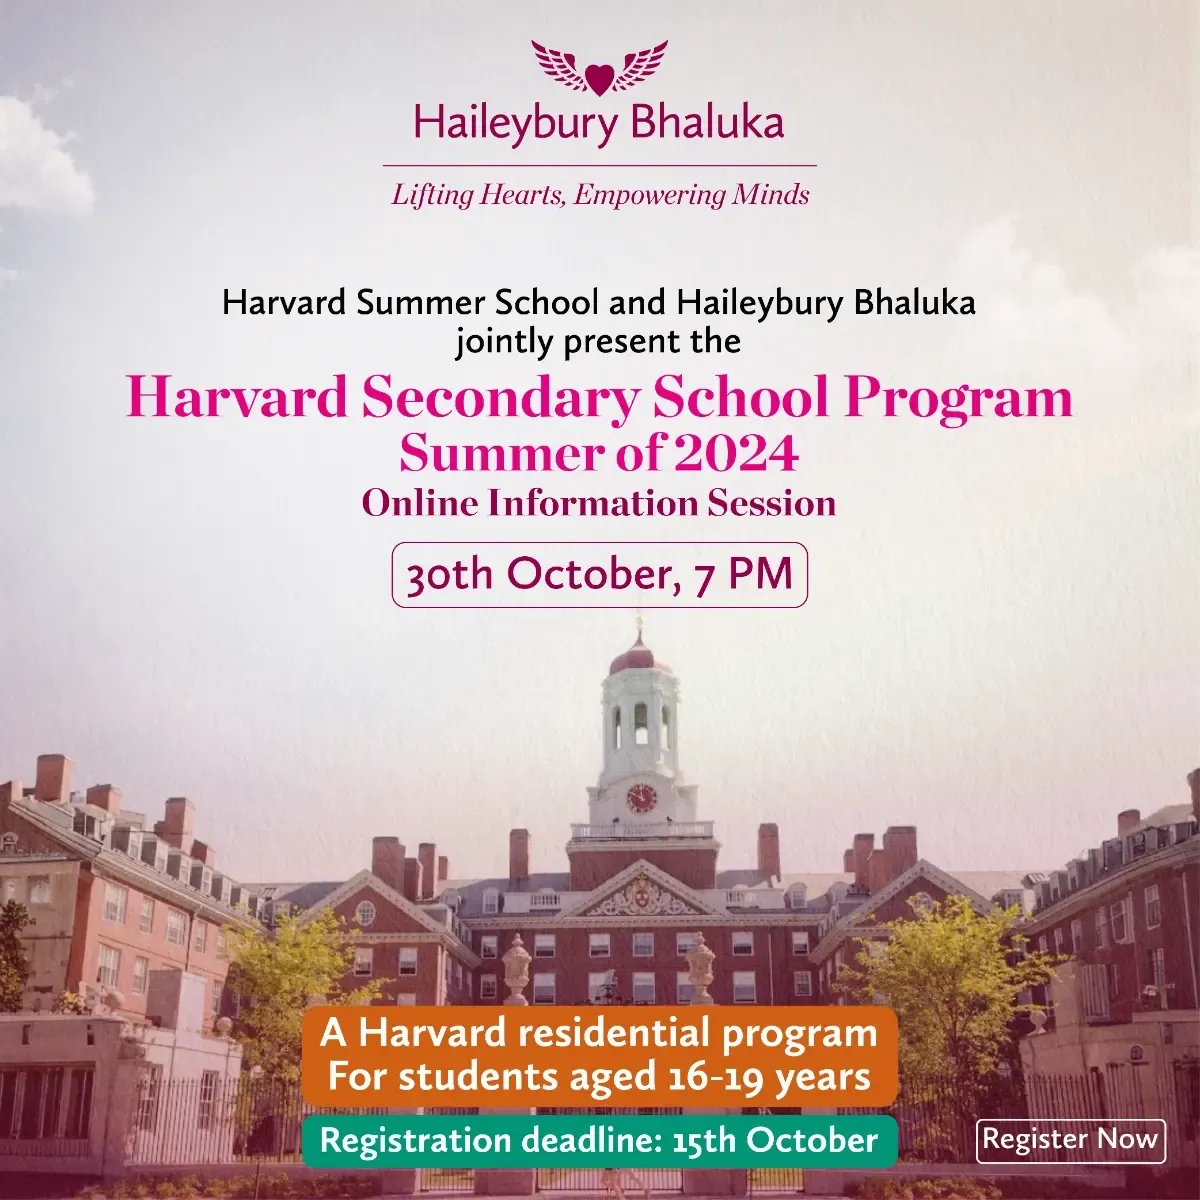 Harvard Secondary School Program Summer of 2024